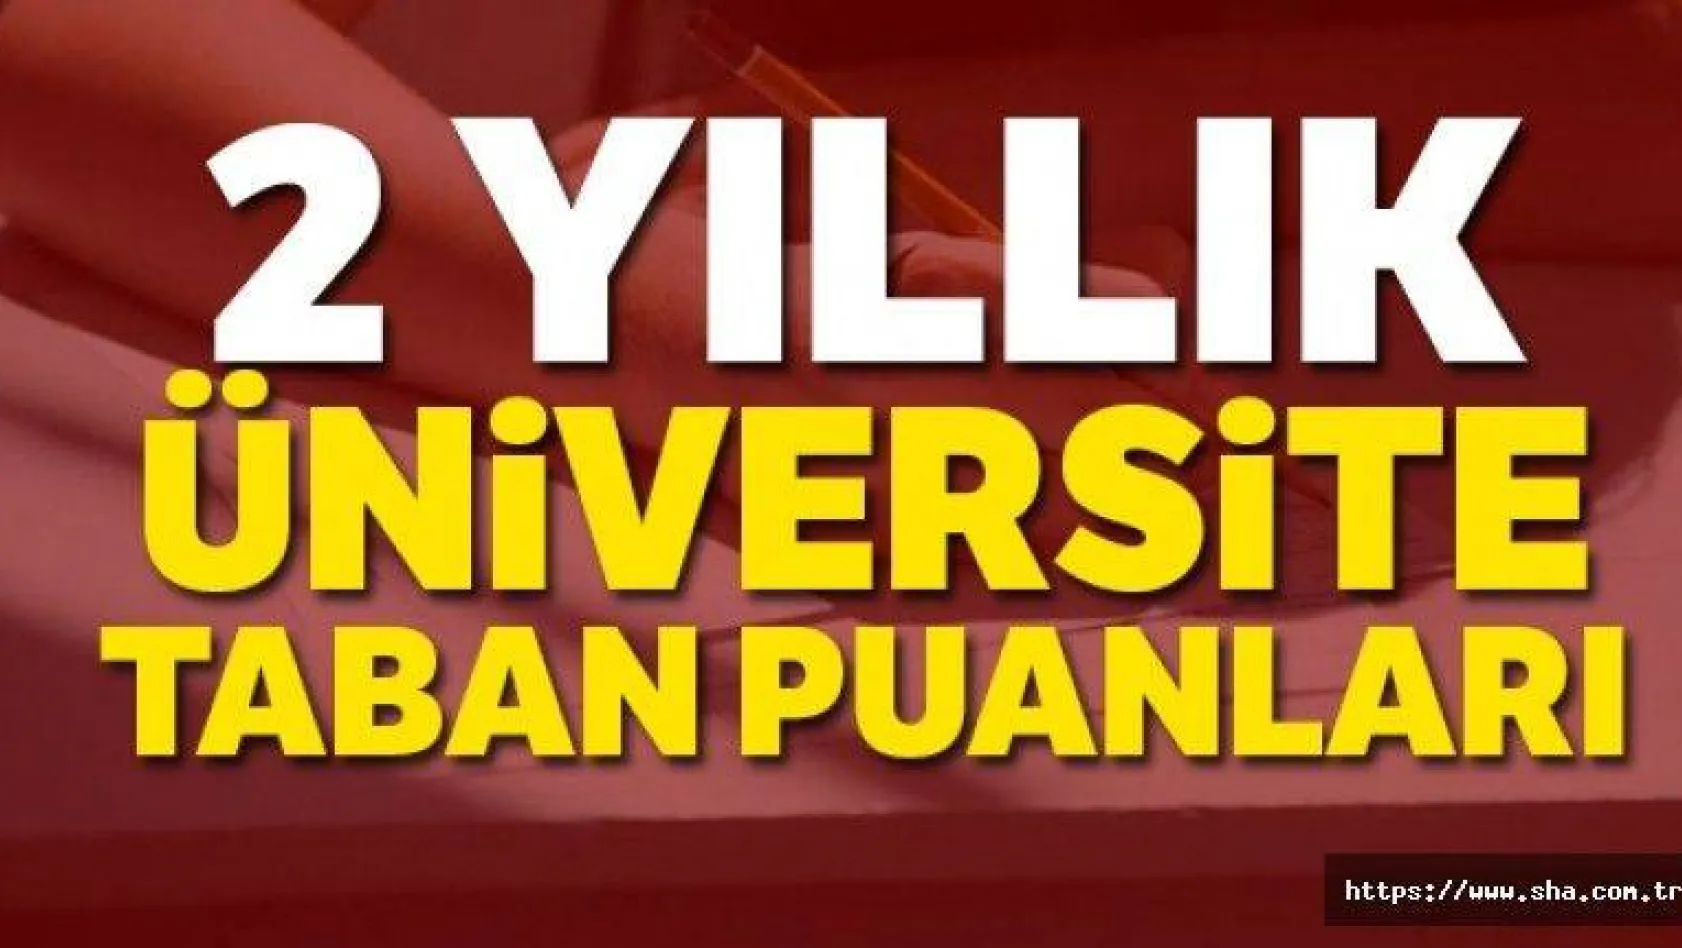 2 yıllık Üniversite Taban Puanları 2019-2020